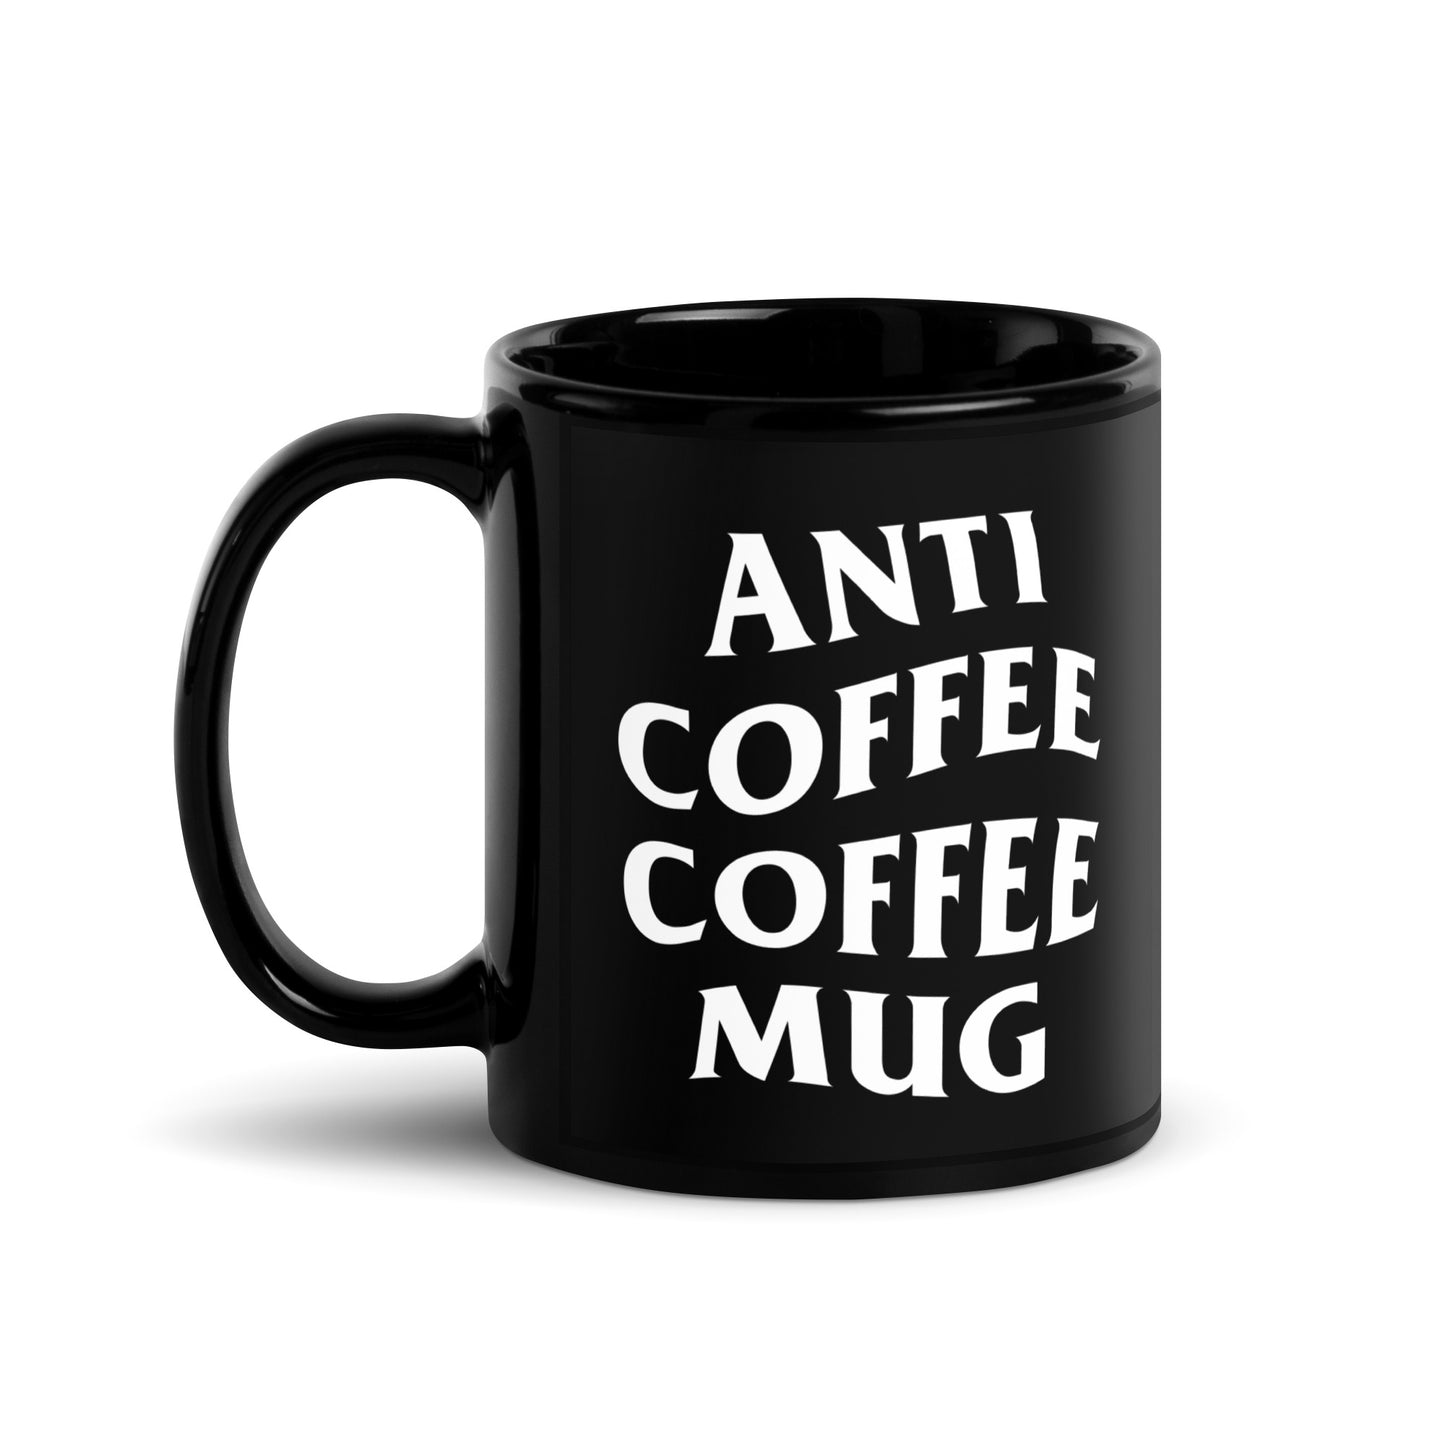 Anti Coffee Coffee Mug black glossy mug